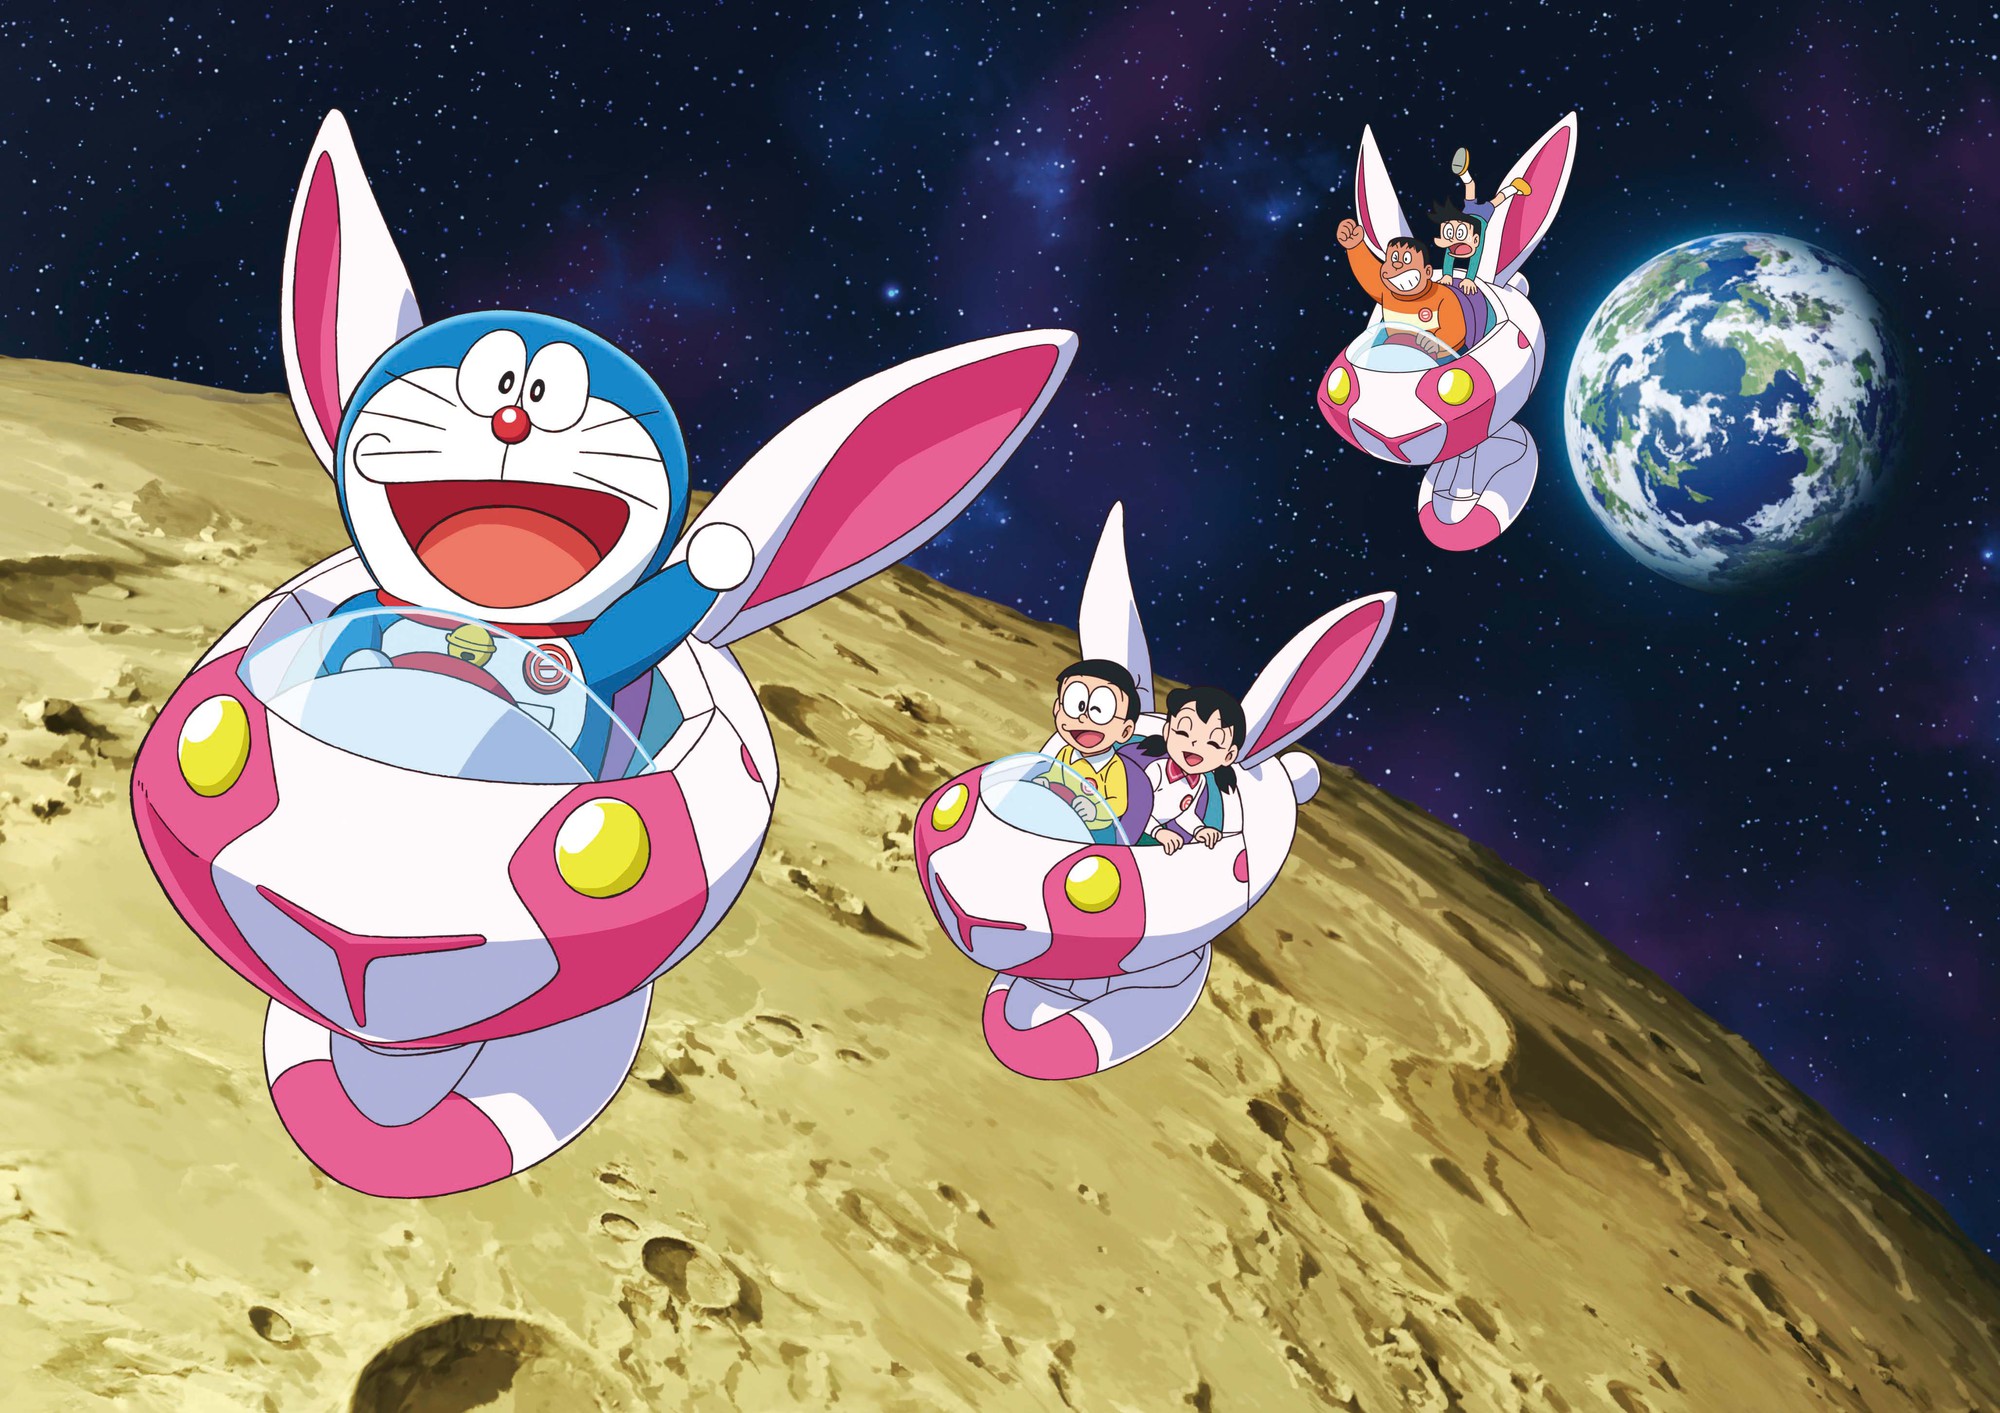 Doraemon thỏ ngọc - Hình ảnh Doraemon thỏ ngọc được thiết kế cực kỳ độc đáo và đẹp mắt. Là một fan cuồng của Doraemon, bạn chắc chắn sẽ rất háo hức khi được xem ảnh này. Hãy đến với chú thỏ xanh để thỏa sức khám phá thế giới đầy màu sắc và hài hước của Doraemon.